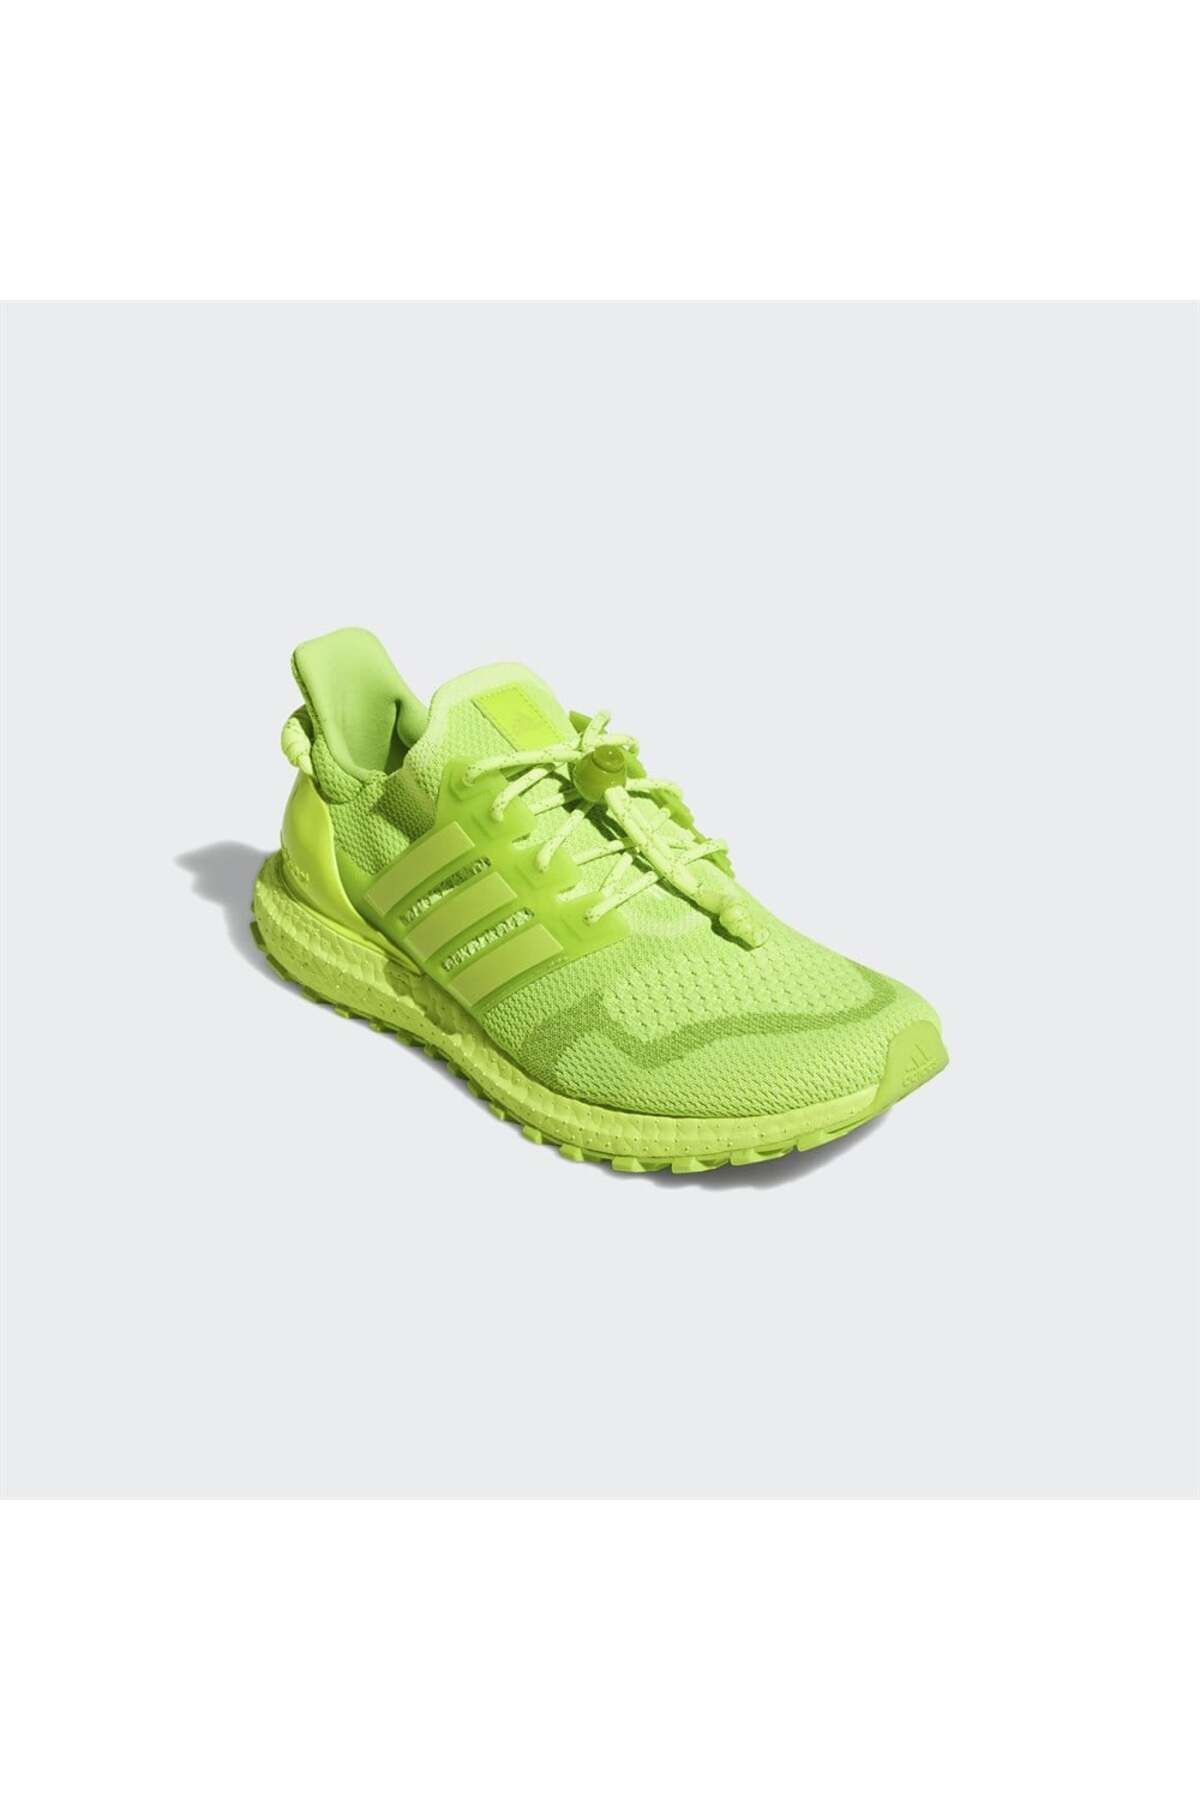 کفش کتانی دویدن و پیاده روی مردانه مدل IVP Ultraboost OG آدیداس Adidas